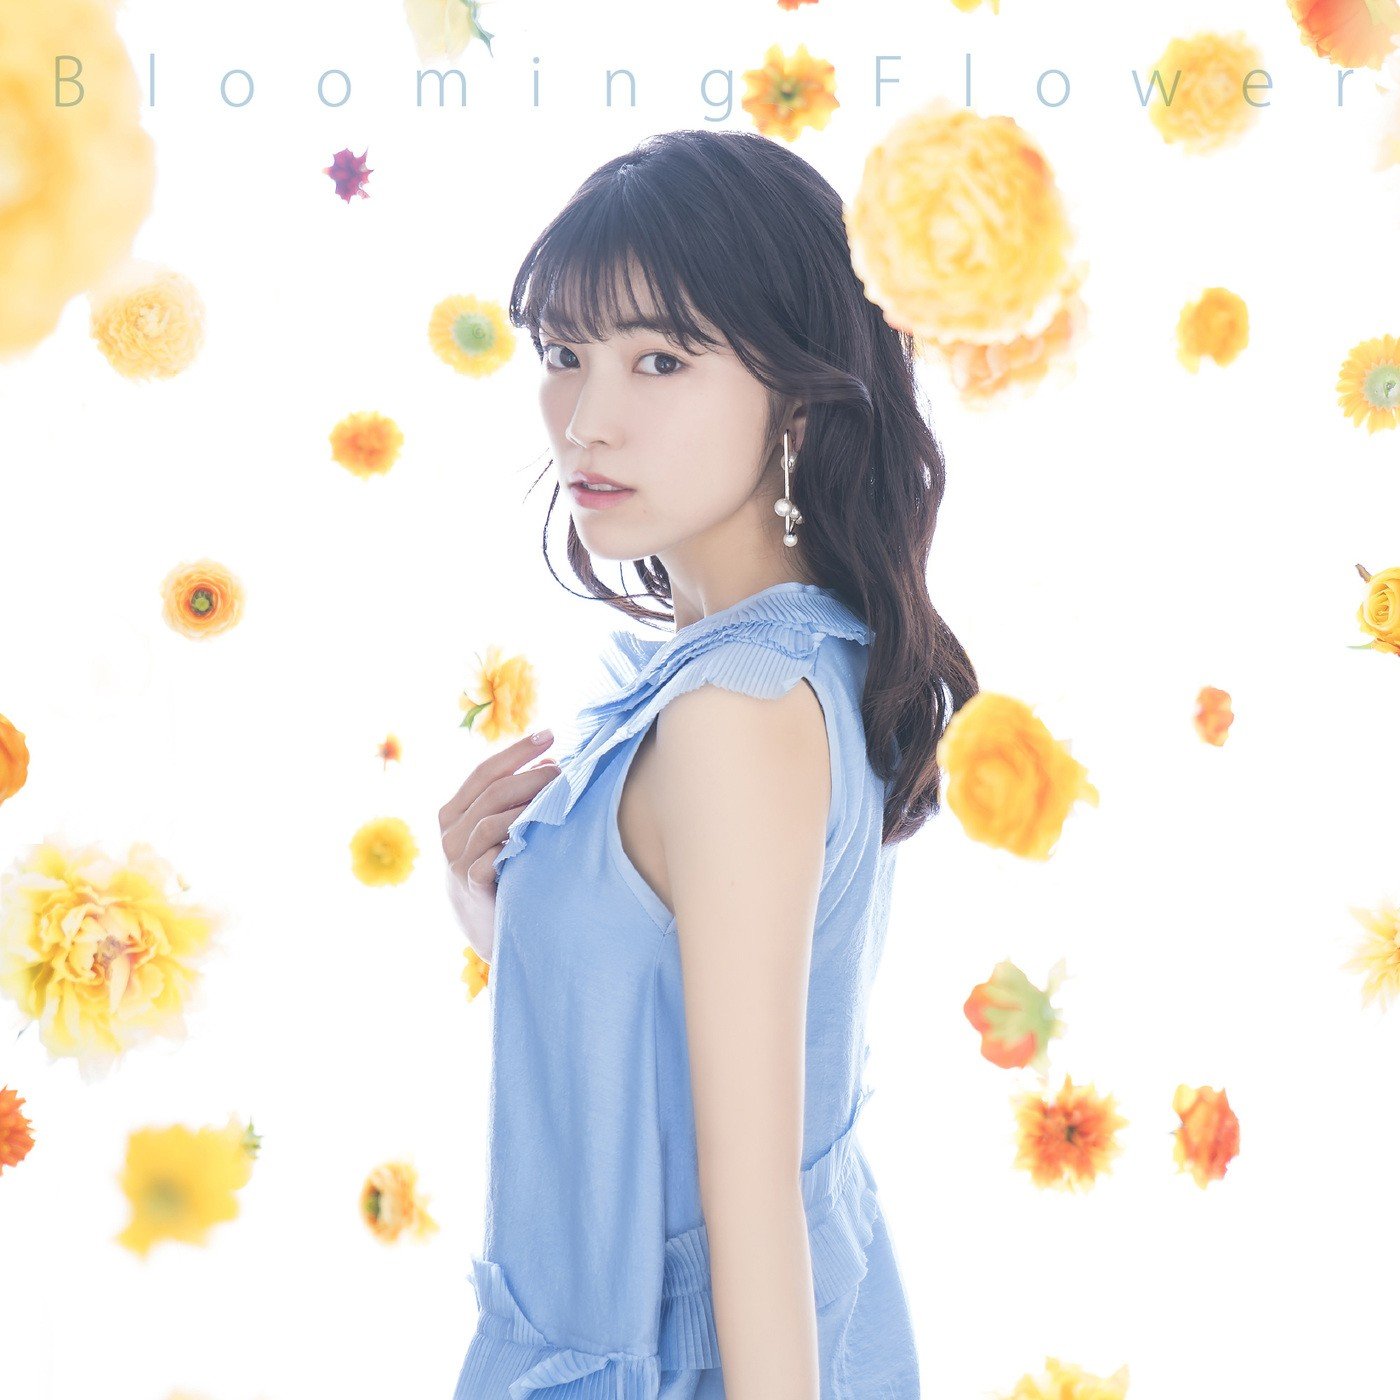 石原夏織 (Kaori Ishihara) - Blooming Flower [Mora FLAC 24bit/96kHz]